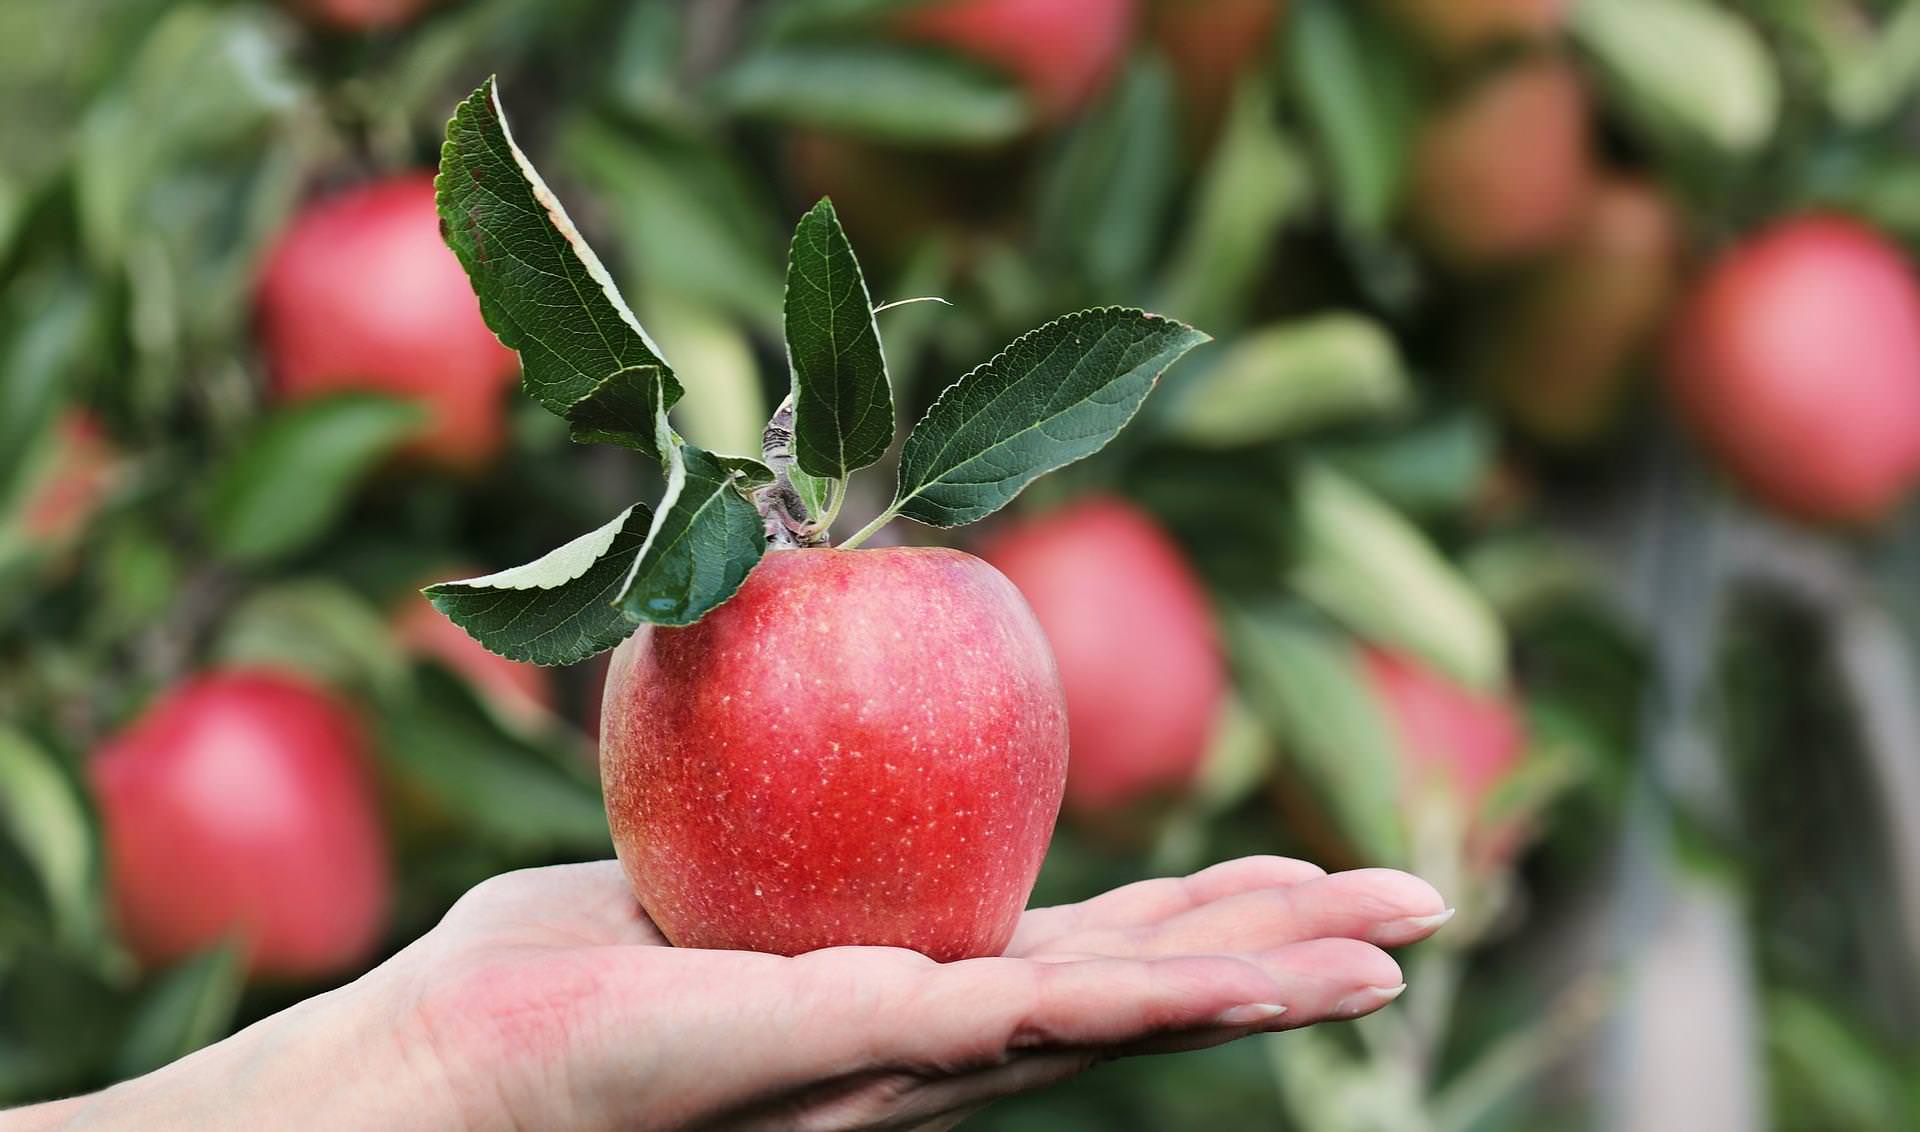 Jabłko – jestem pyszne i zero waste